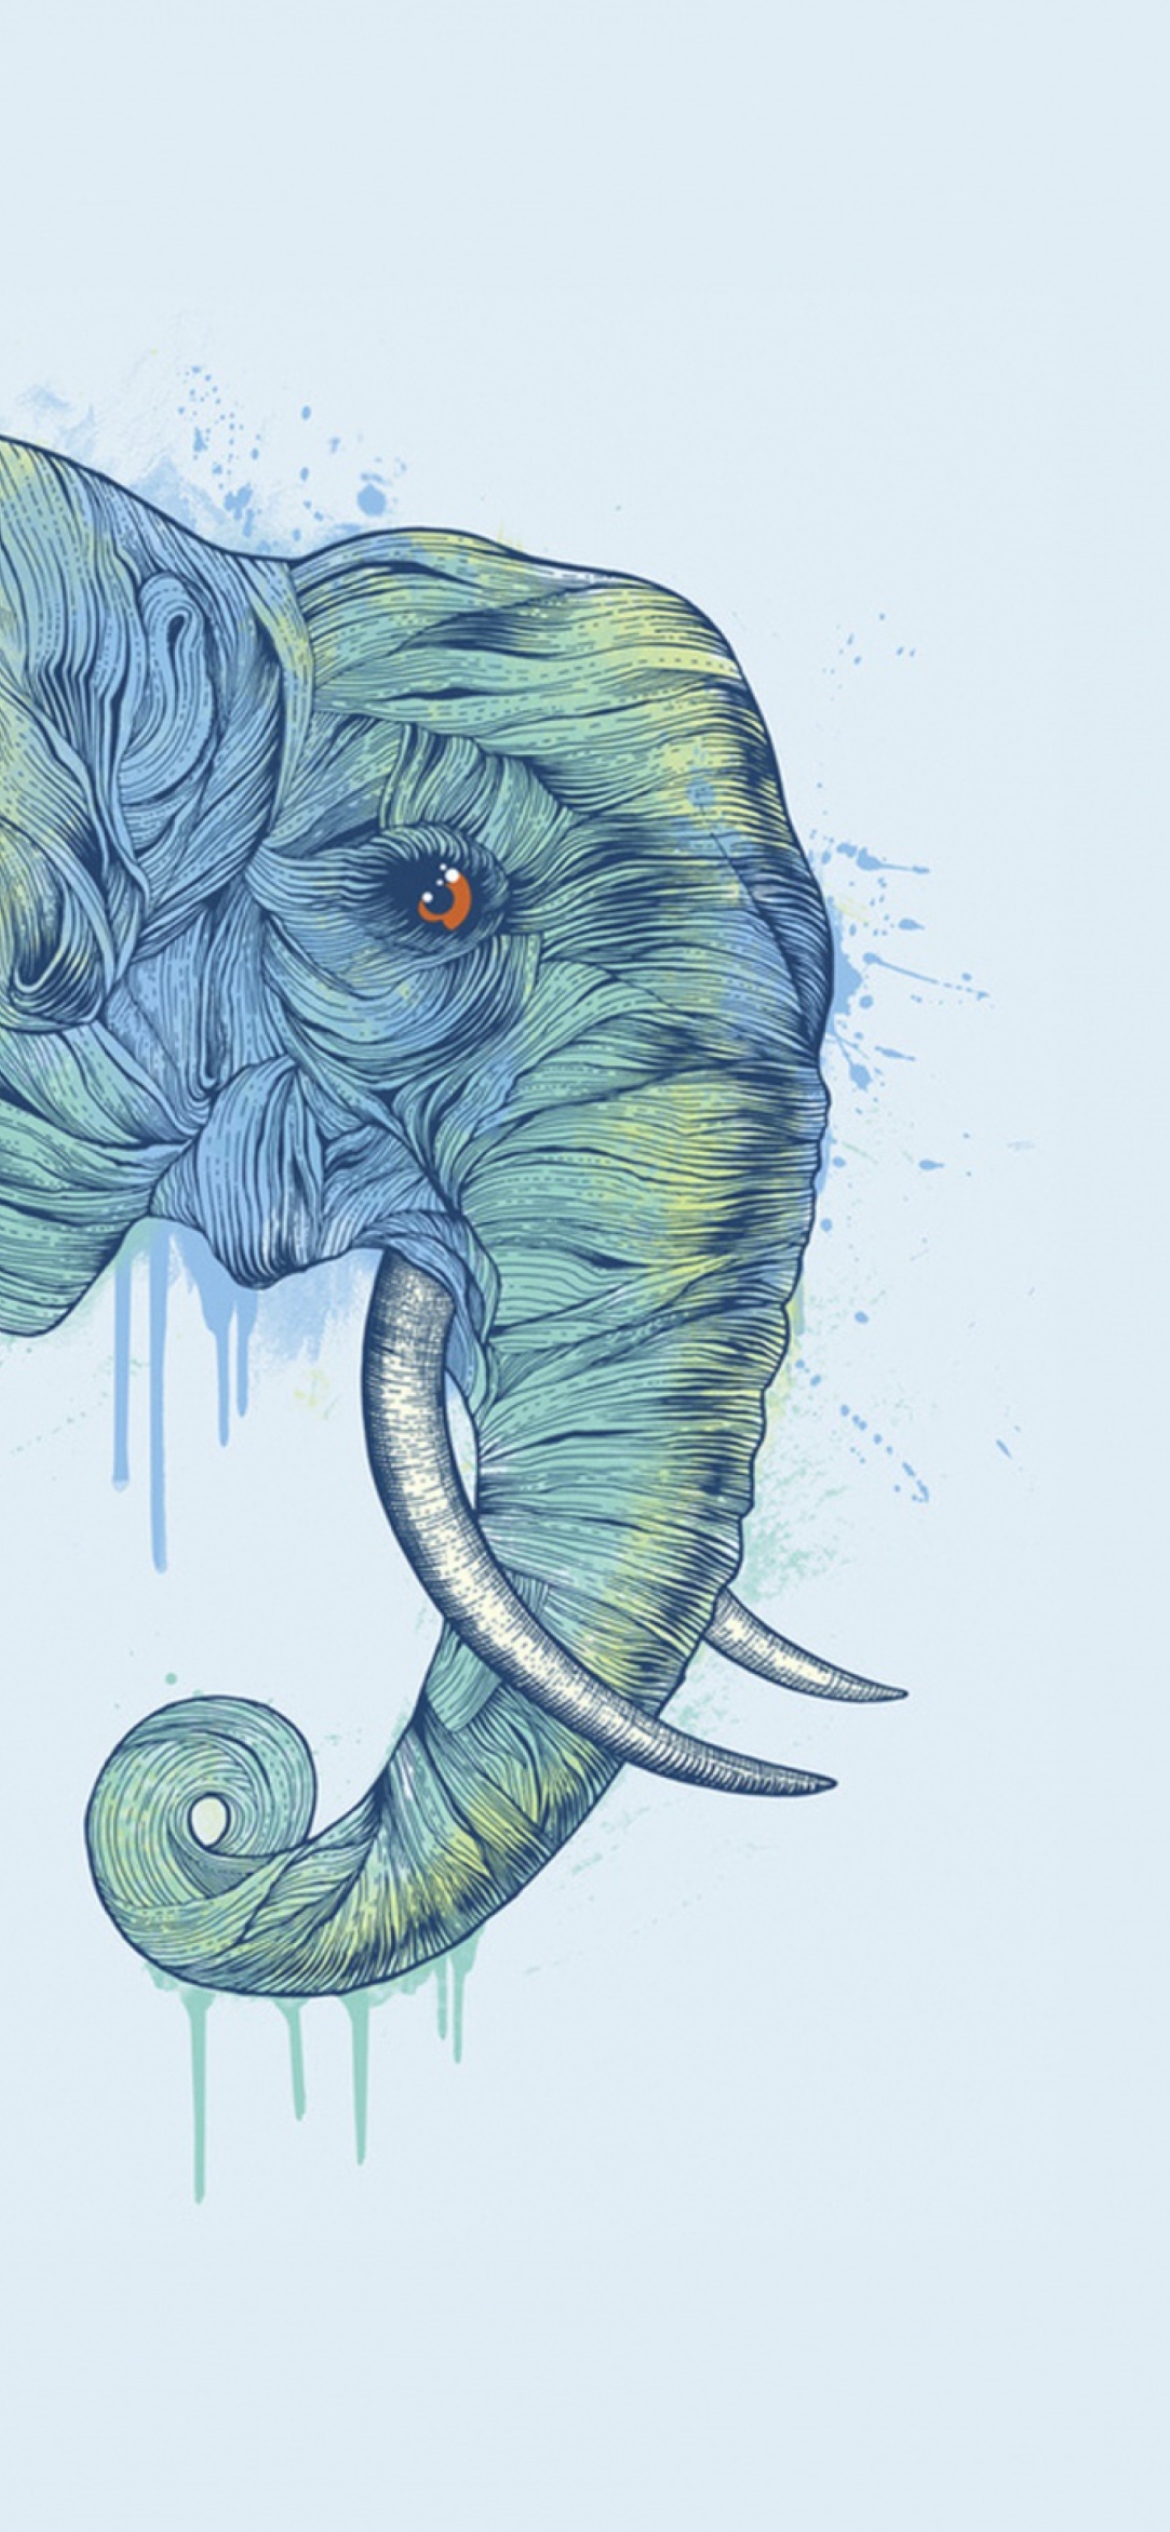 Elephan Head wallpaper 1170x2532